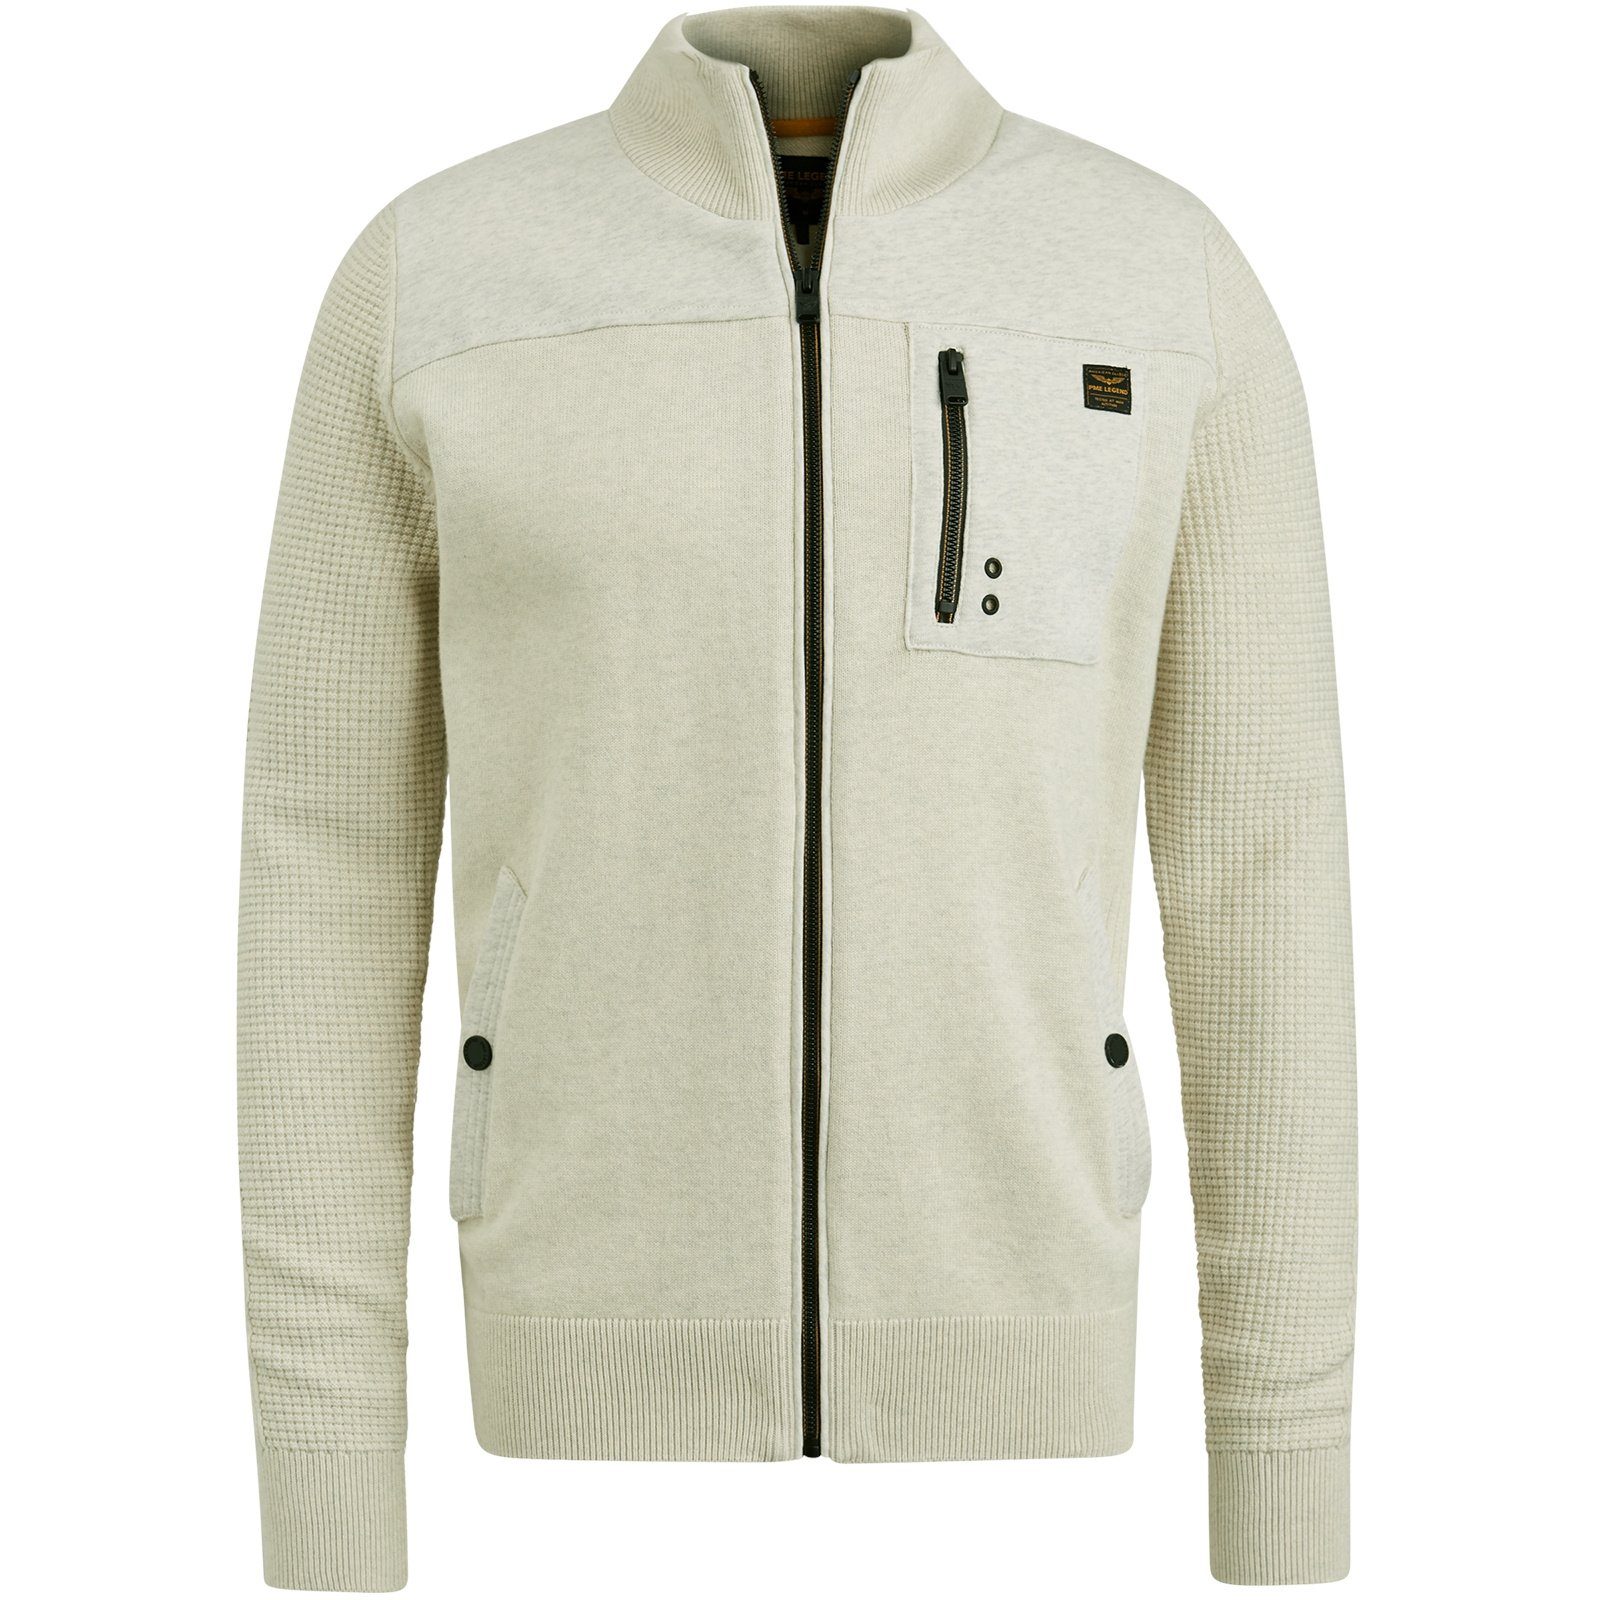 LEGEND Sweatjacke jacket bone white combination Zip knit PME sweat